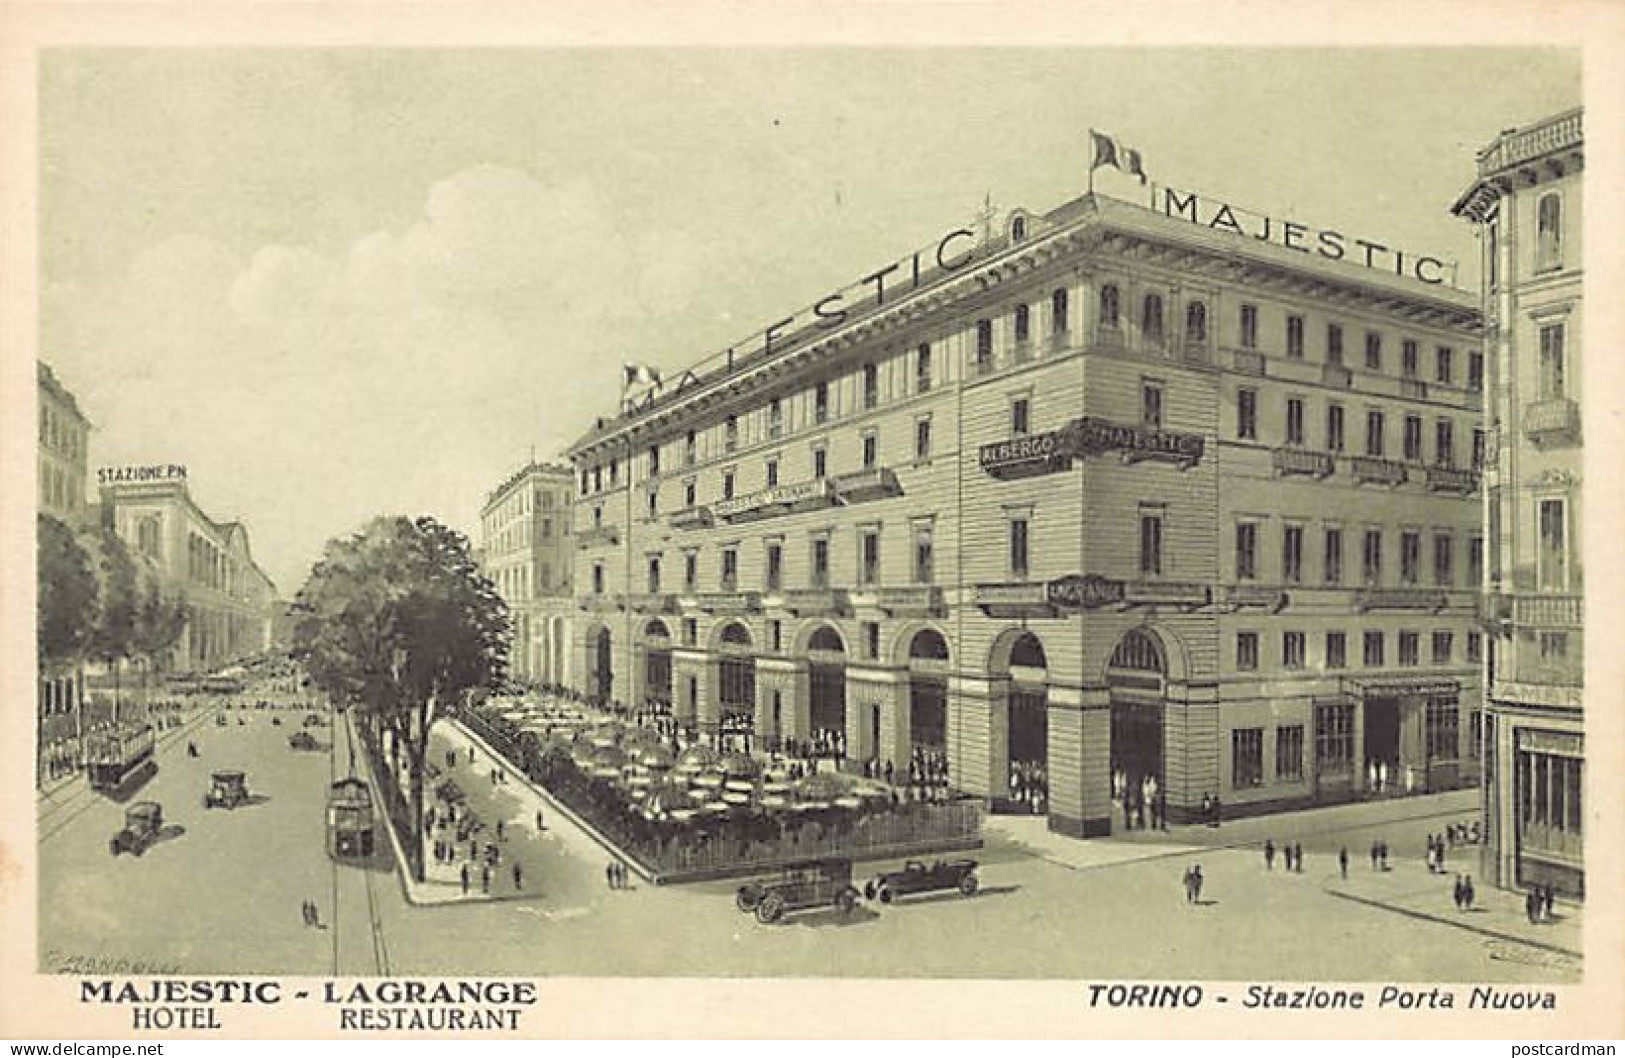  TORINO - Hotel Majestic Lagrange - Stazione Porta Nuova - Bares, Hoteles Y Restaurantes